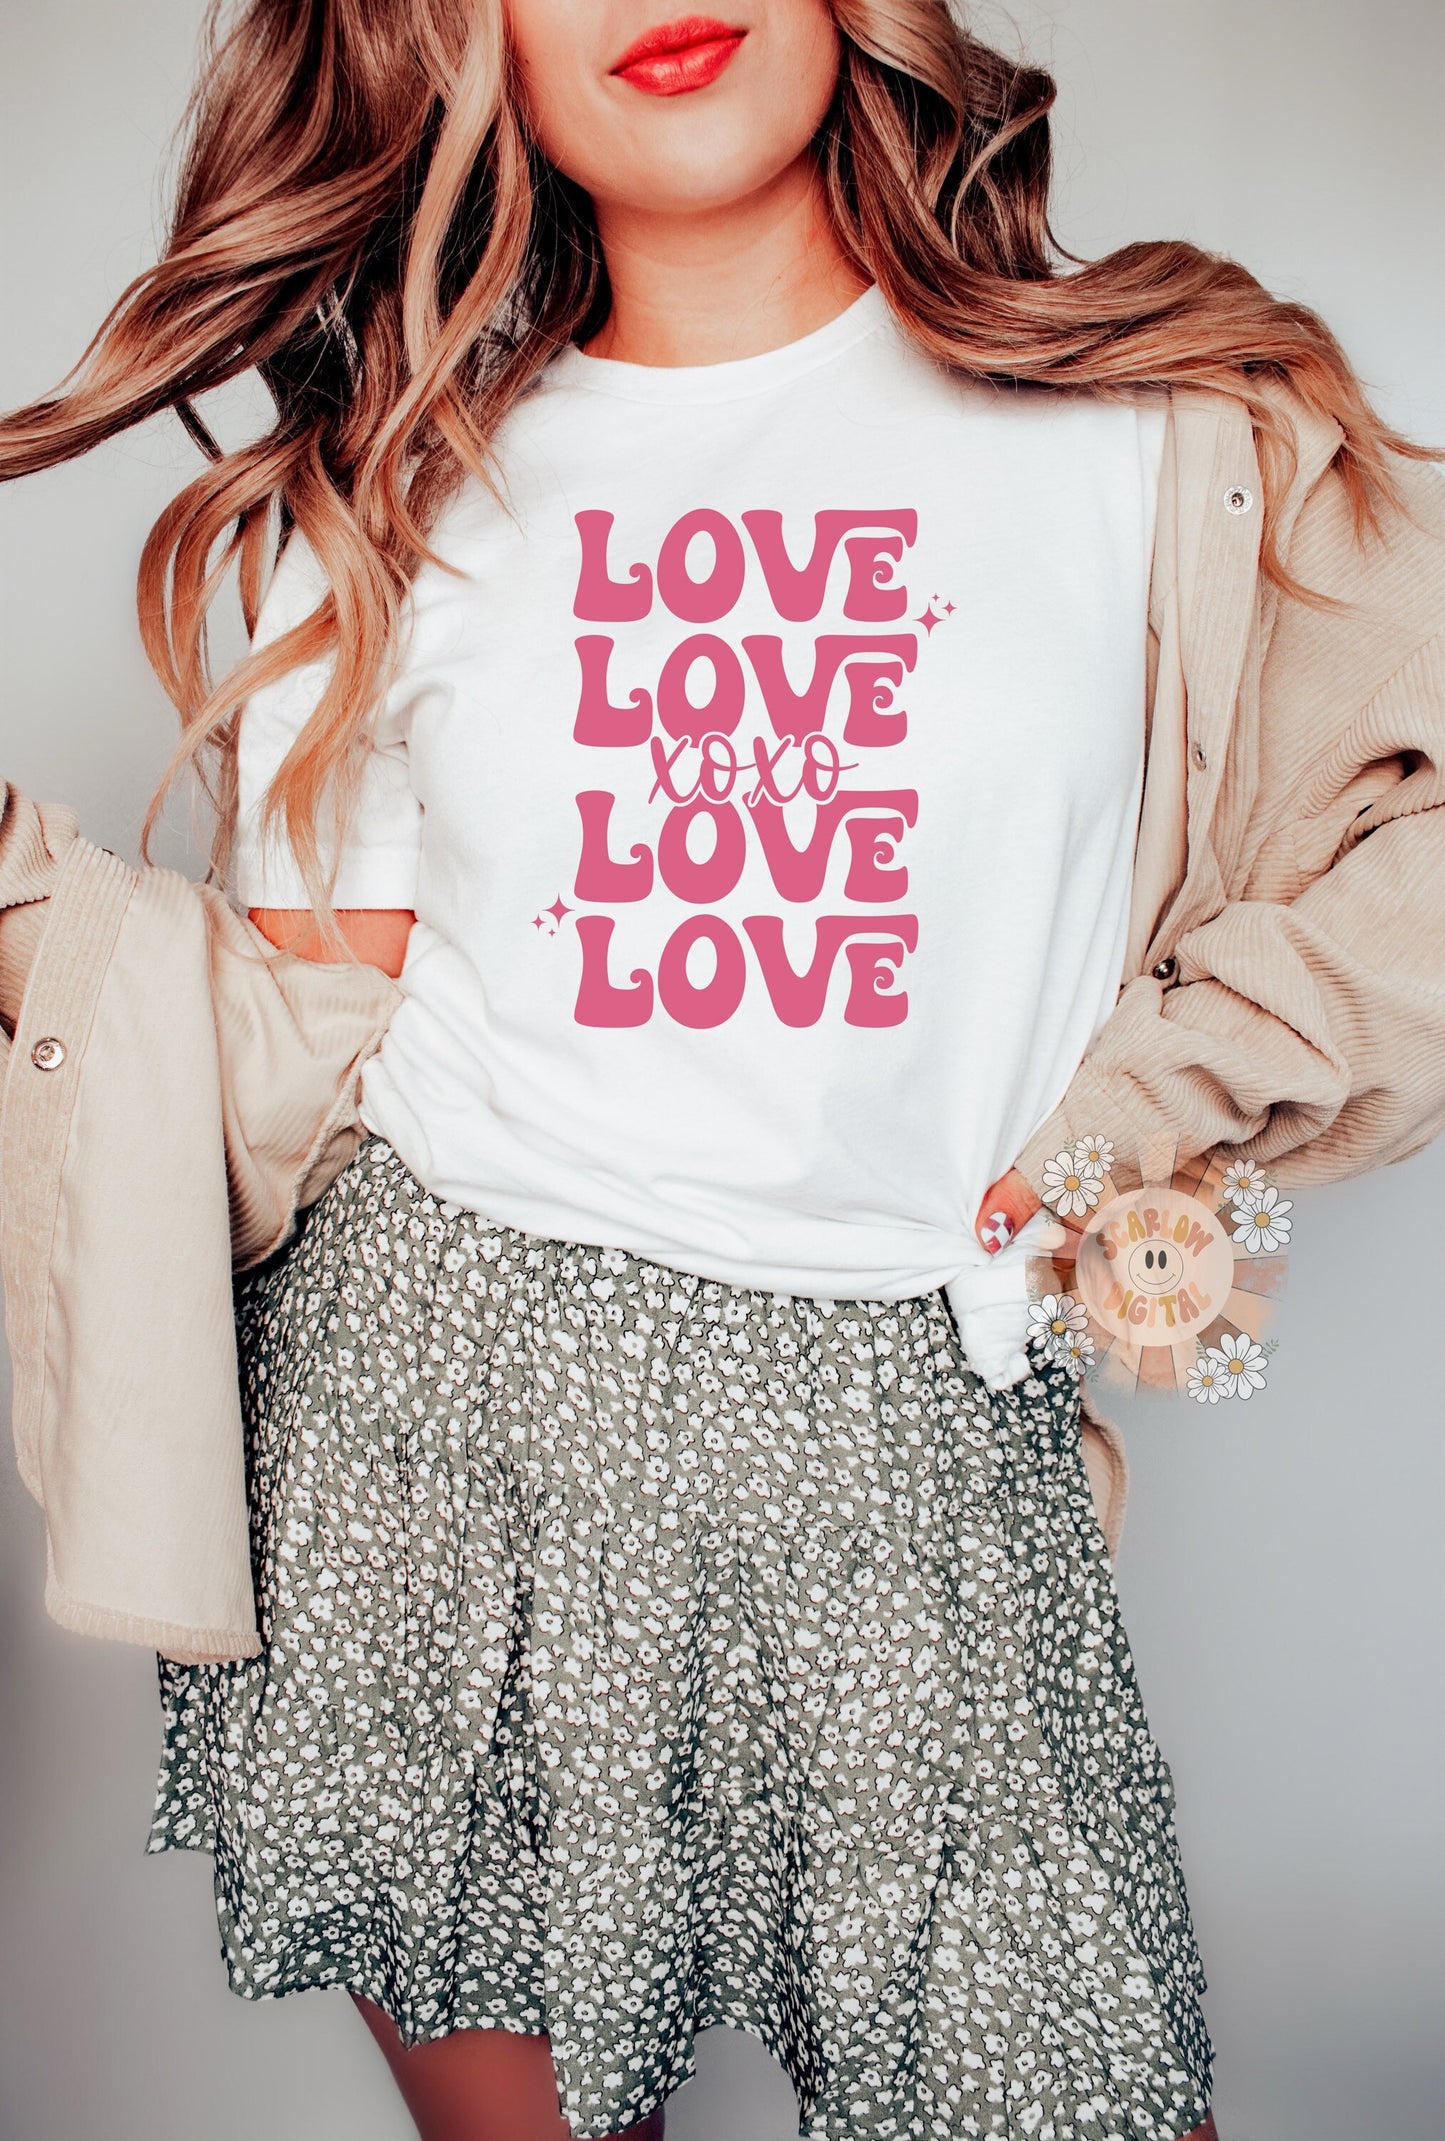 Love Love Love SVG, Valentines Day SVG, boho SVG, cute vday svg, love svg, xoxo svg, vday svg, kisses svg, heart svg, cupid svg, Cricut svg